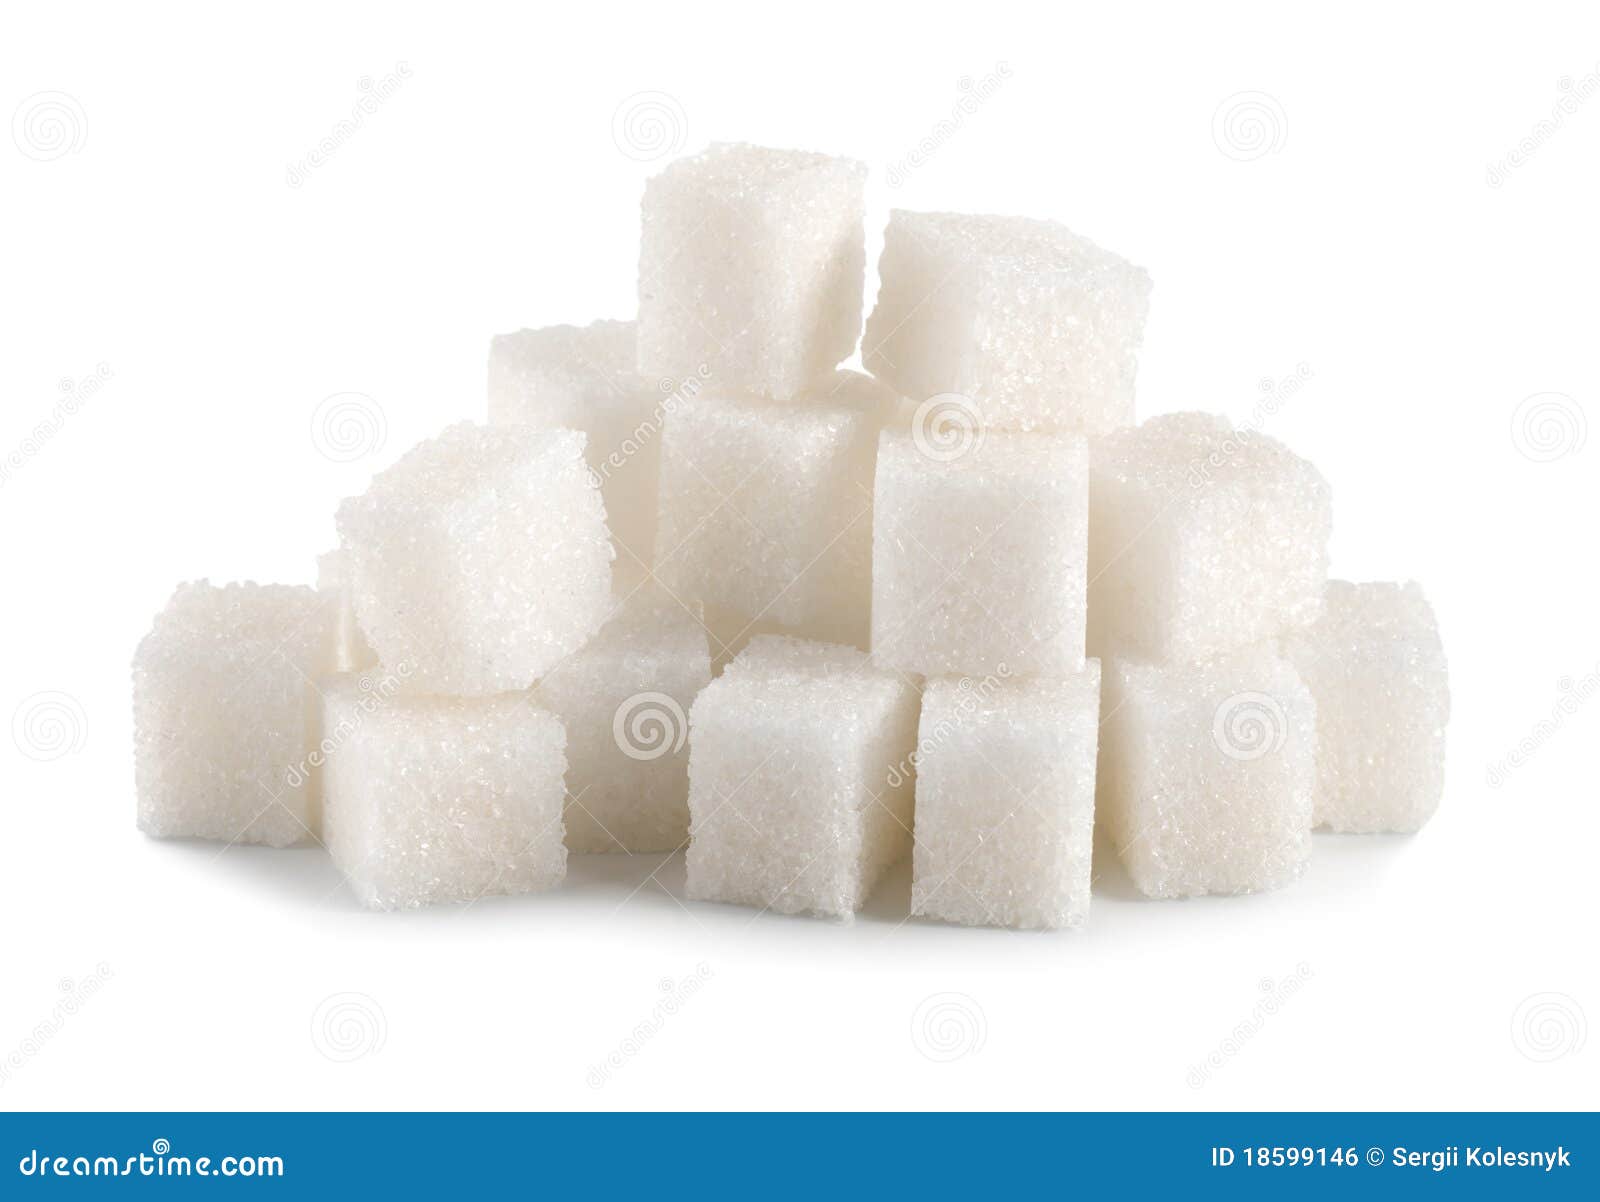 sugar cube 